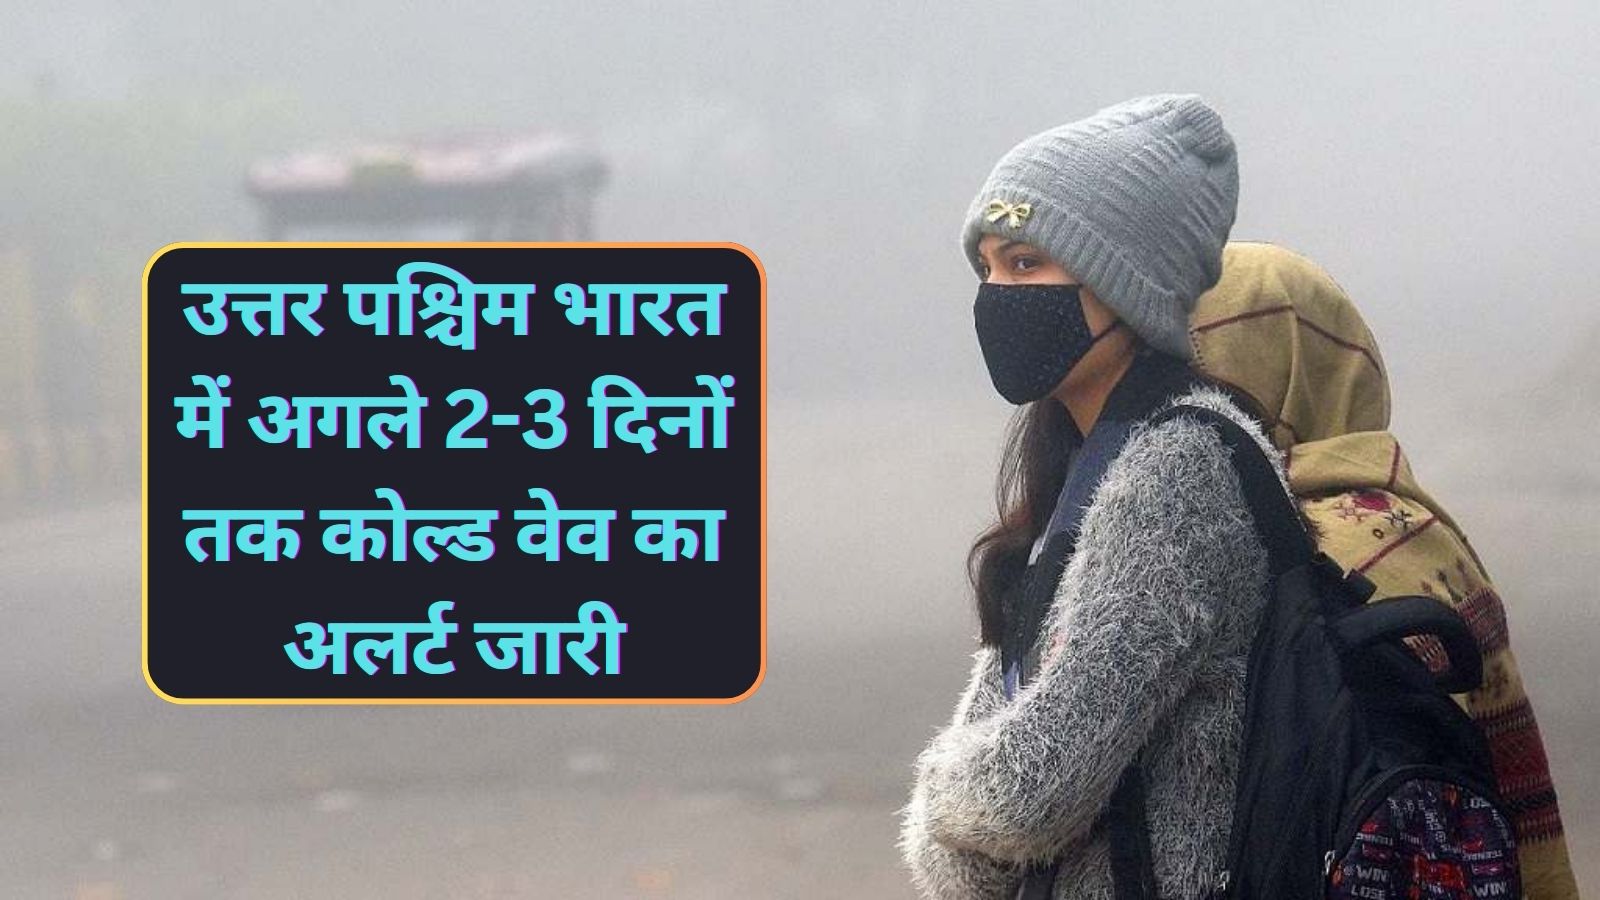 Cold Wave Alert:उत्तर पश्चिम भारत में अगले 2-3 दिनों तक कोल्ड वेव का अलर्ट जारी,